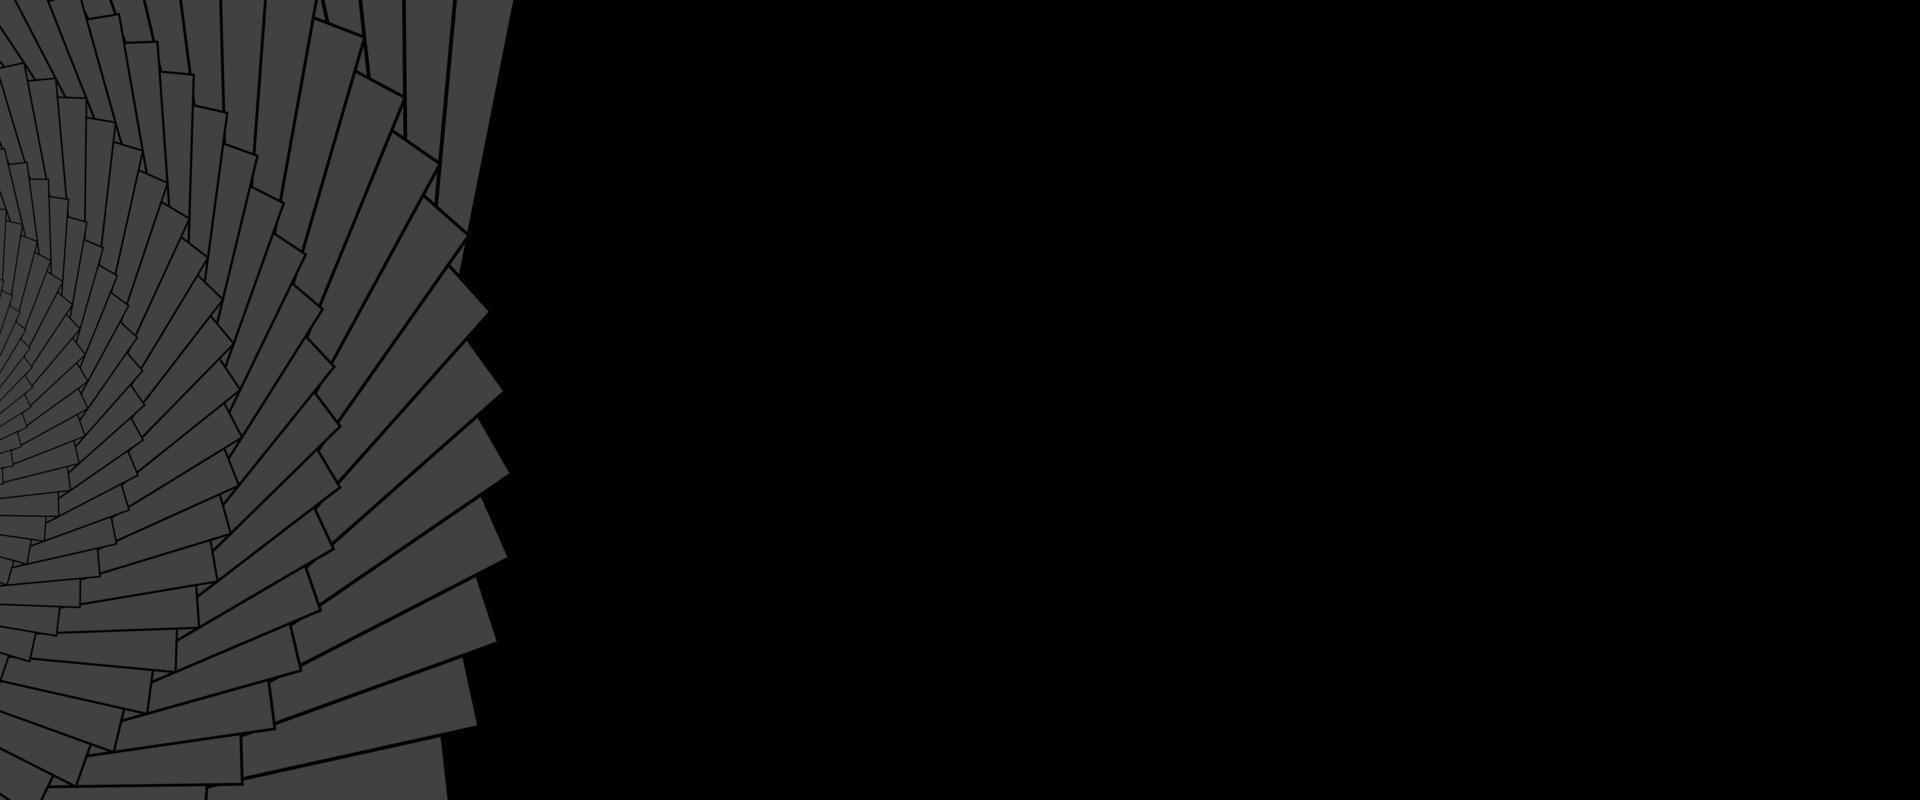 design astratto banner minimale con spazio per testo su sfondo nero. disegno geometrico per l'intestazione del sito web. illustrazione vettoriale